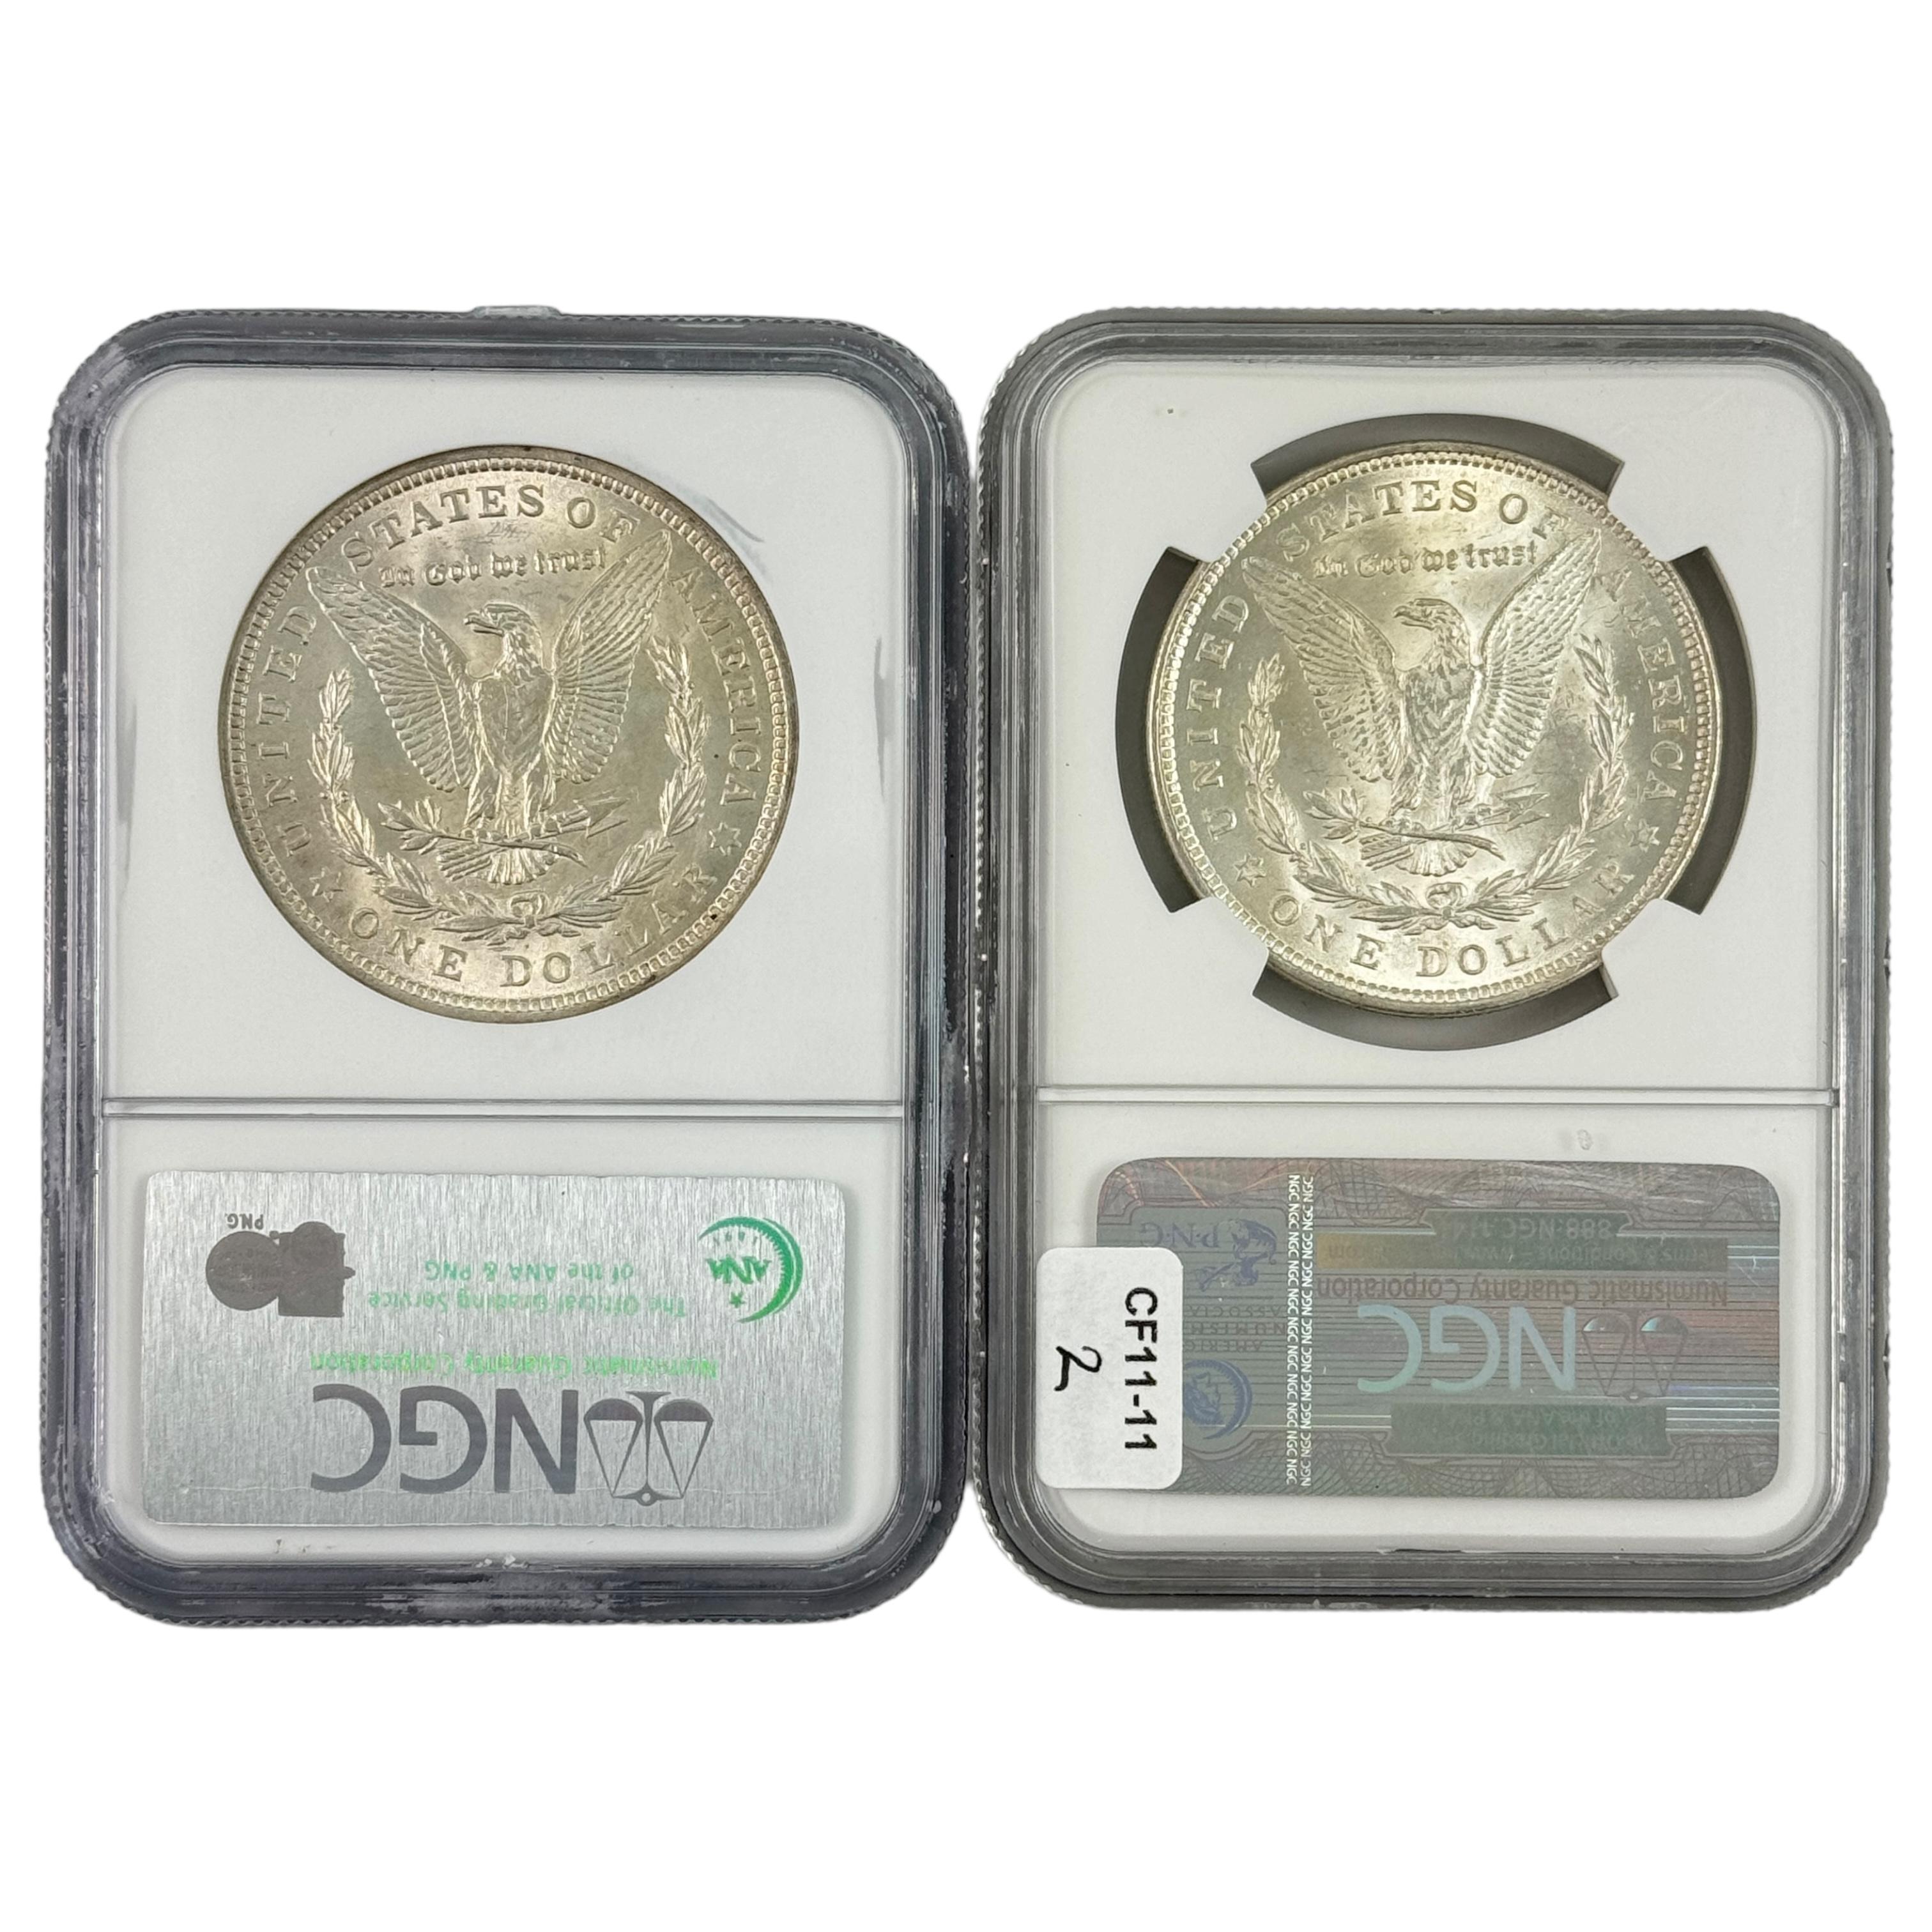 Pair of certified 1921 U.S. Morgan silver dollars